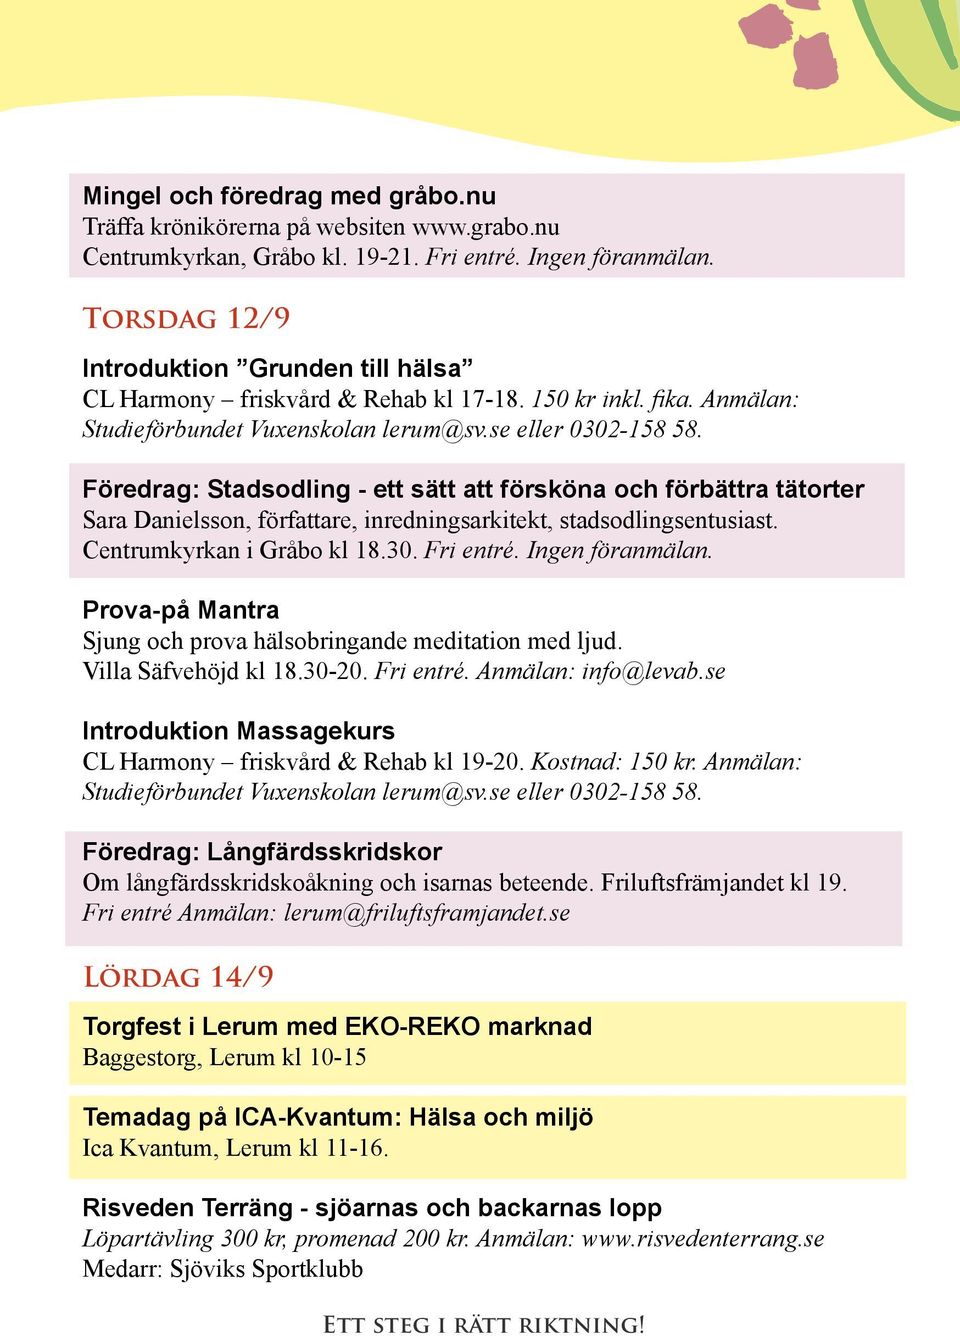 Föredrag: Stadsodling - ett sätt att försköna och förbättra tätorter Sara Danielsson, författare, inredningsarkitekt, stadsodlingsentusiast. Centrumkyrkan i Gråbo kl 18.30. Fri entré.